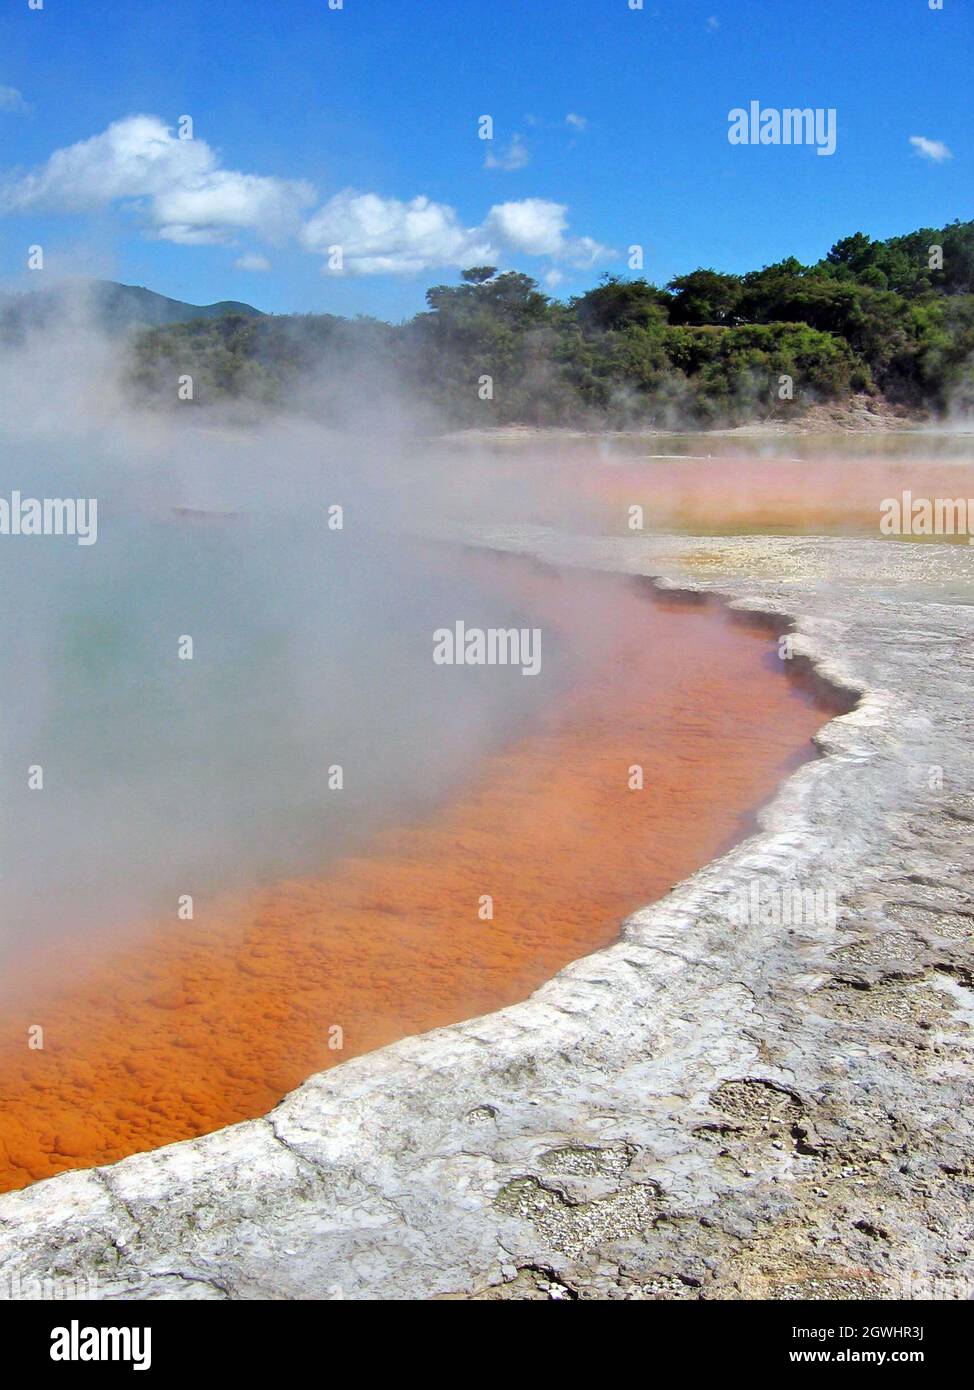 Die Minerallagerstätte baut sich entlang des Champagne Pools in Wai-O-Tapu auf der Nordinsel Neuseelands auf. Die geothermische Landschaft ist Teil der vulkanischen Zone Taupo und befindet sich im Okataina Volcanic Center. Stockfoto